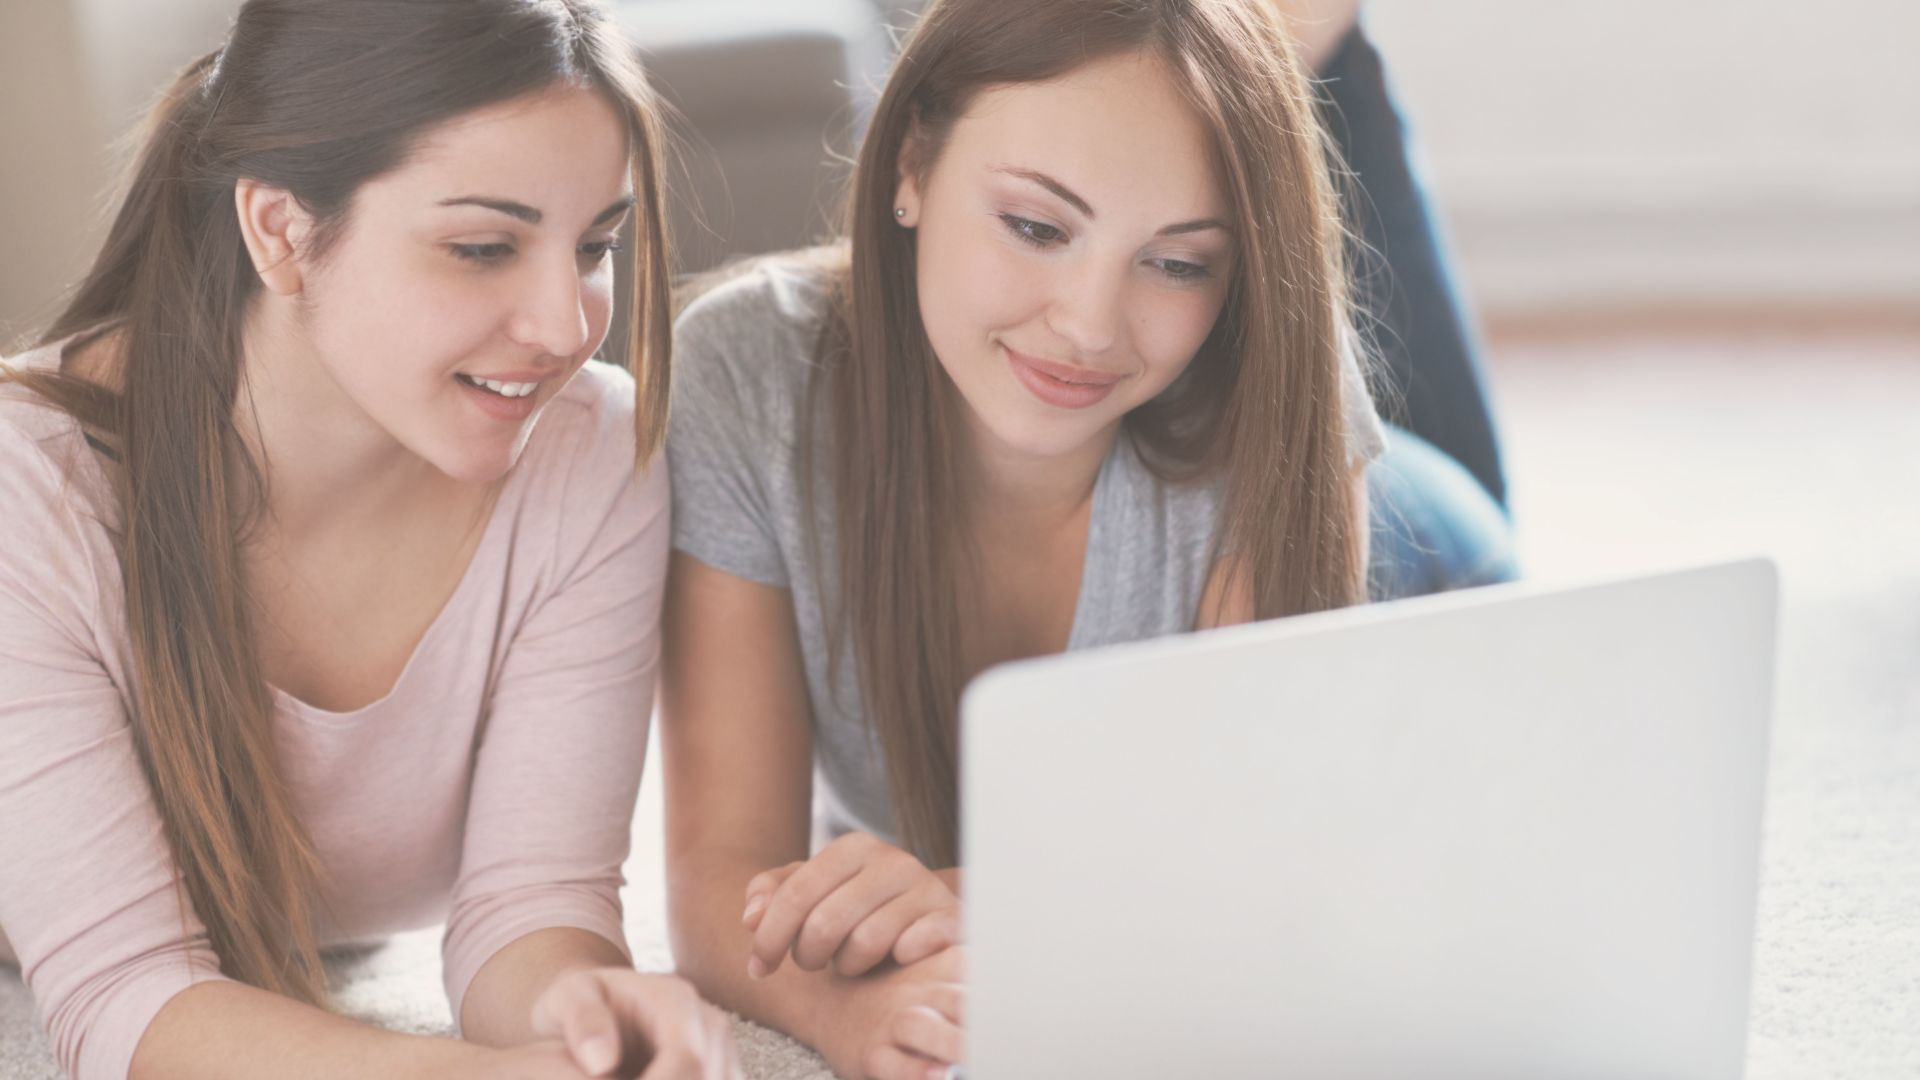 Deux jeunes souriantes devant un ordinateur à la recherche d'un logiciel pour leur entreprise.